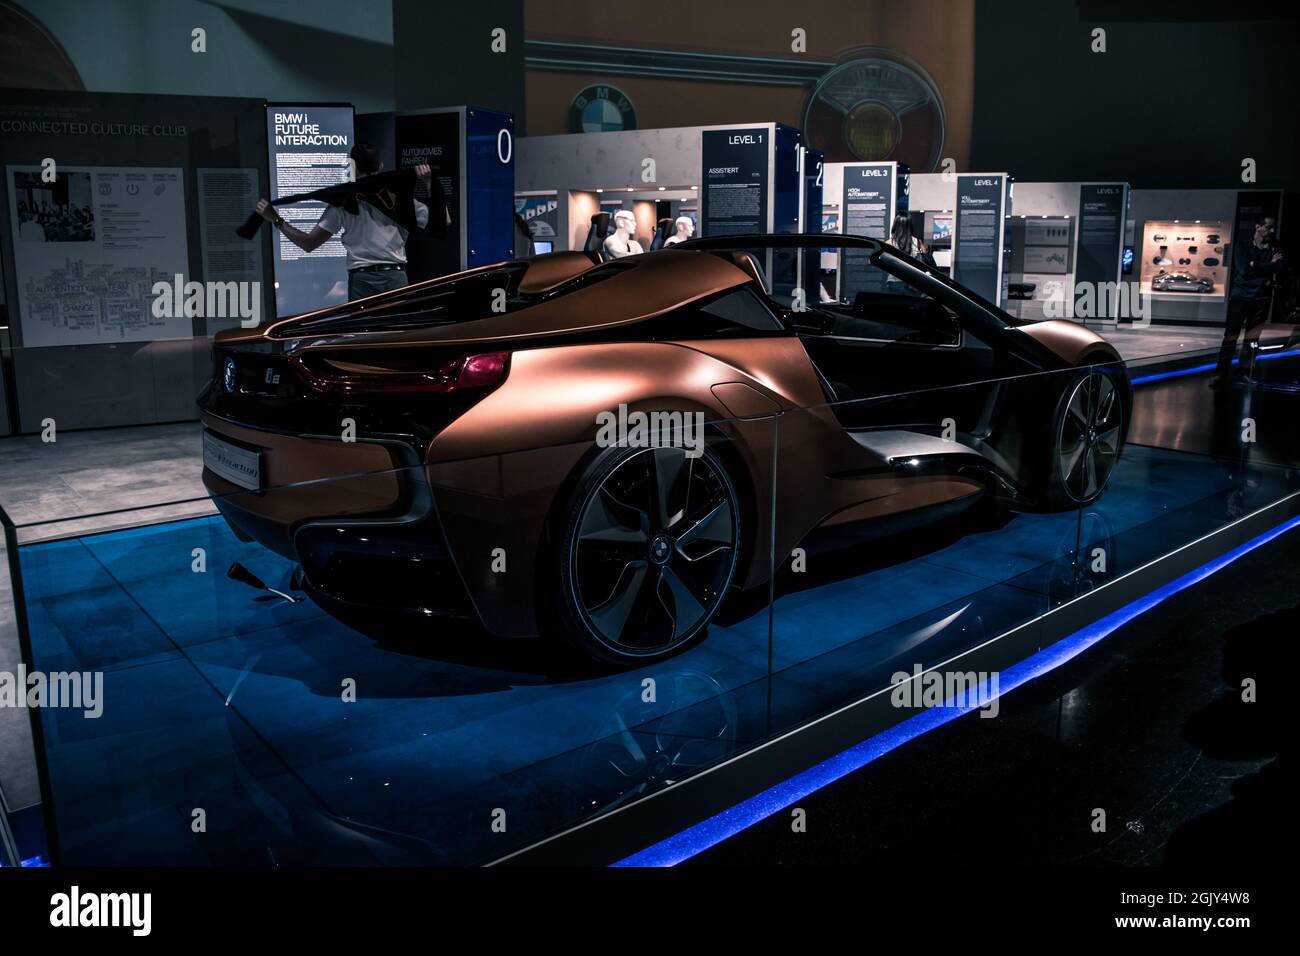 Los temas de tecnología innovadora de BMW i están en el foco: El BMW i3 completamente eléctrico como vehículo constantemente sostenible diseñado sin emisiones para el interior Foto de stock